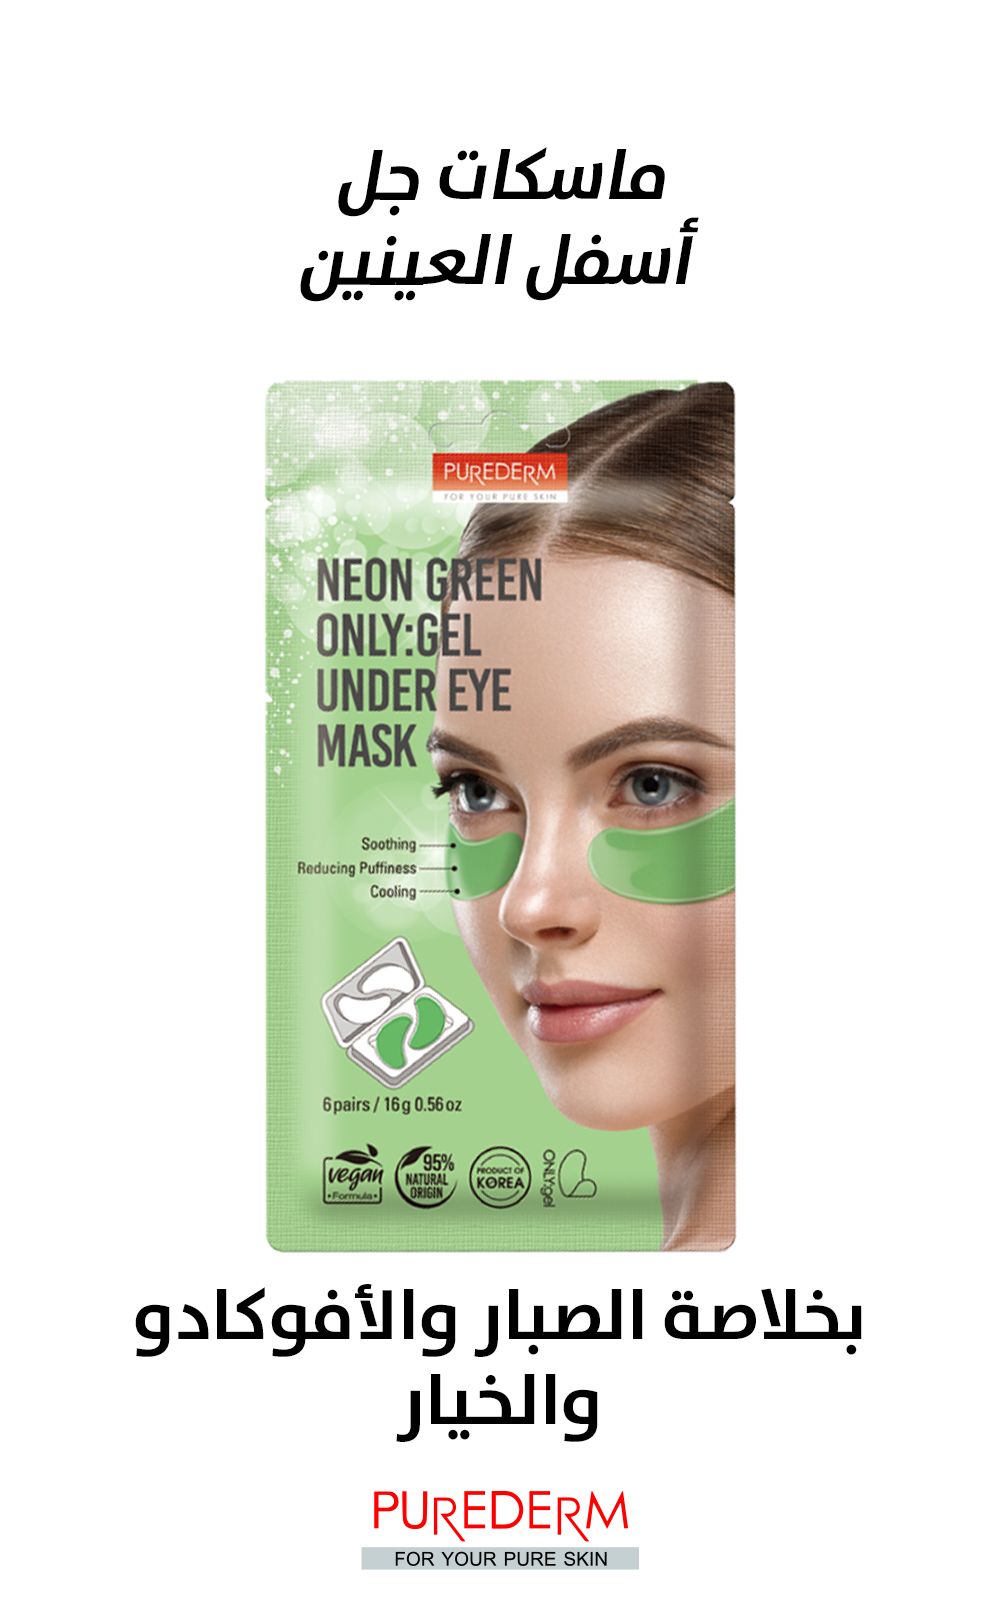 Purederm neon green only:gel under eye mask